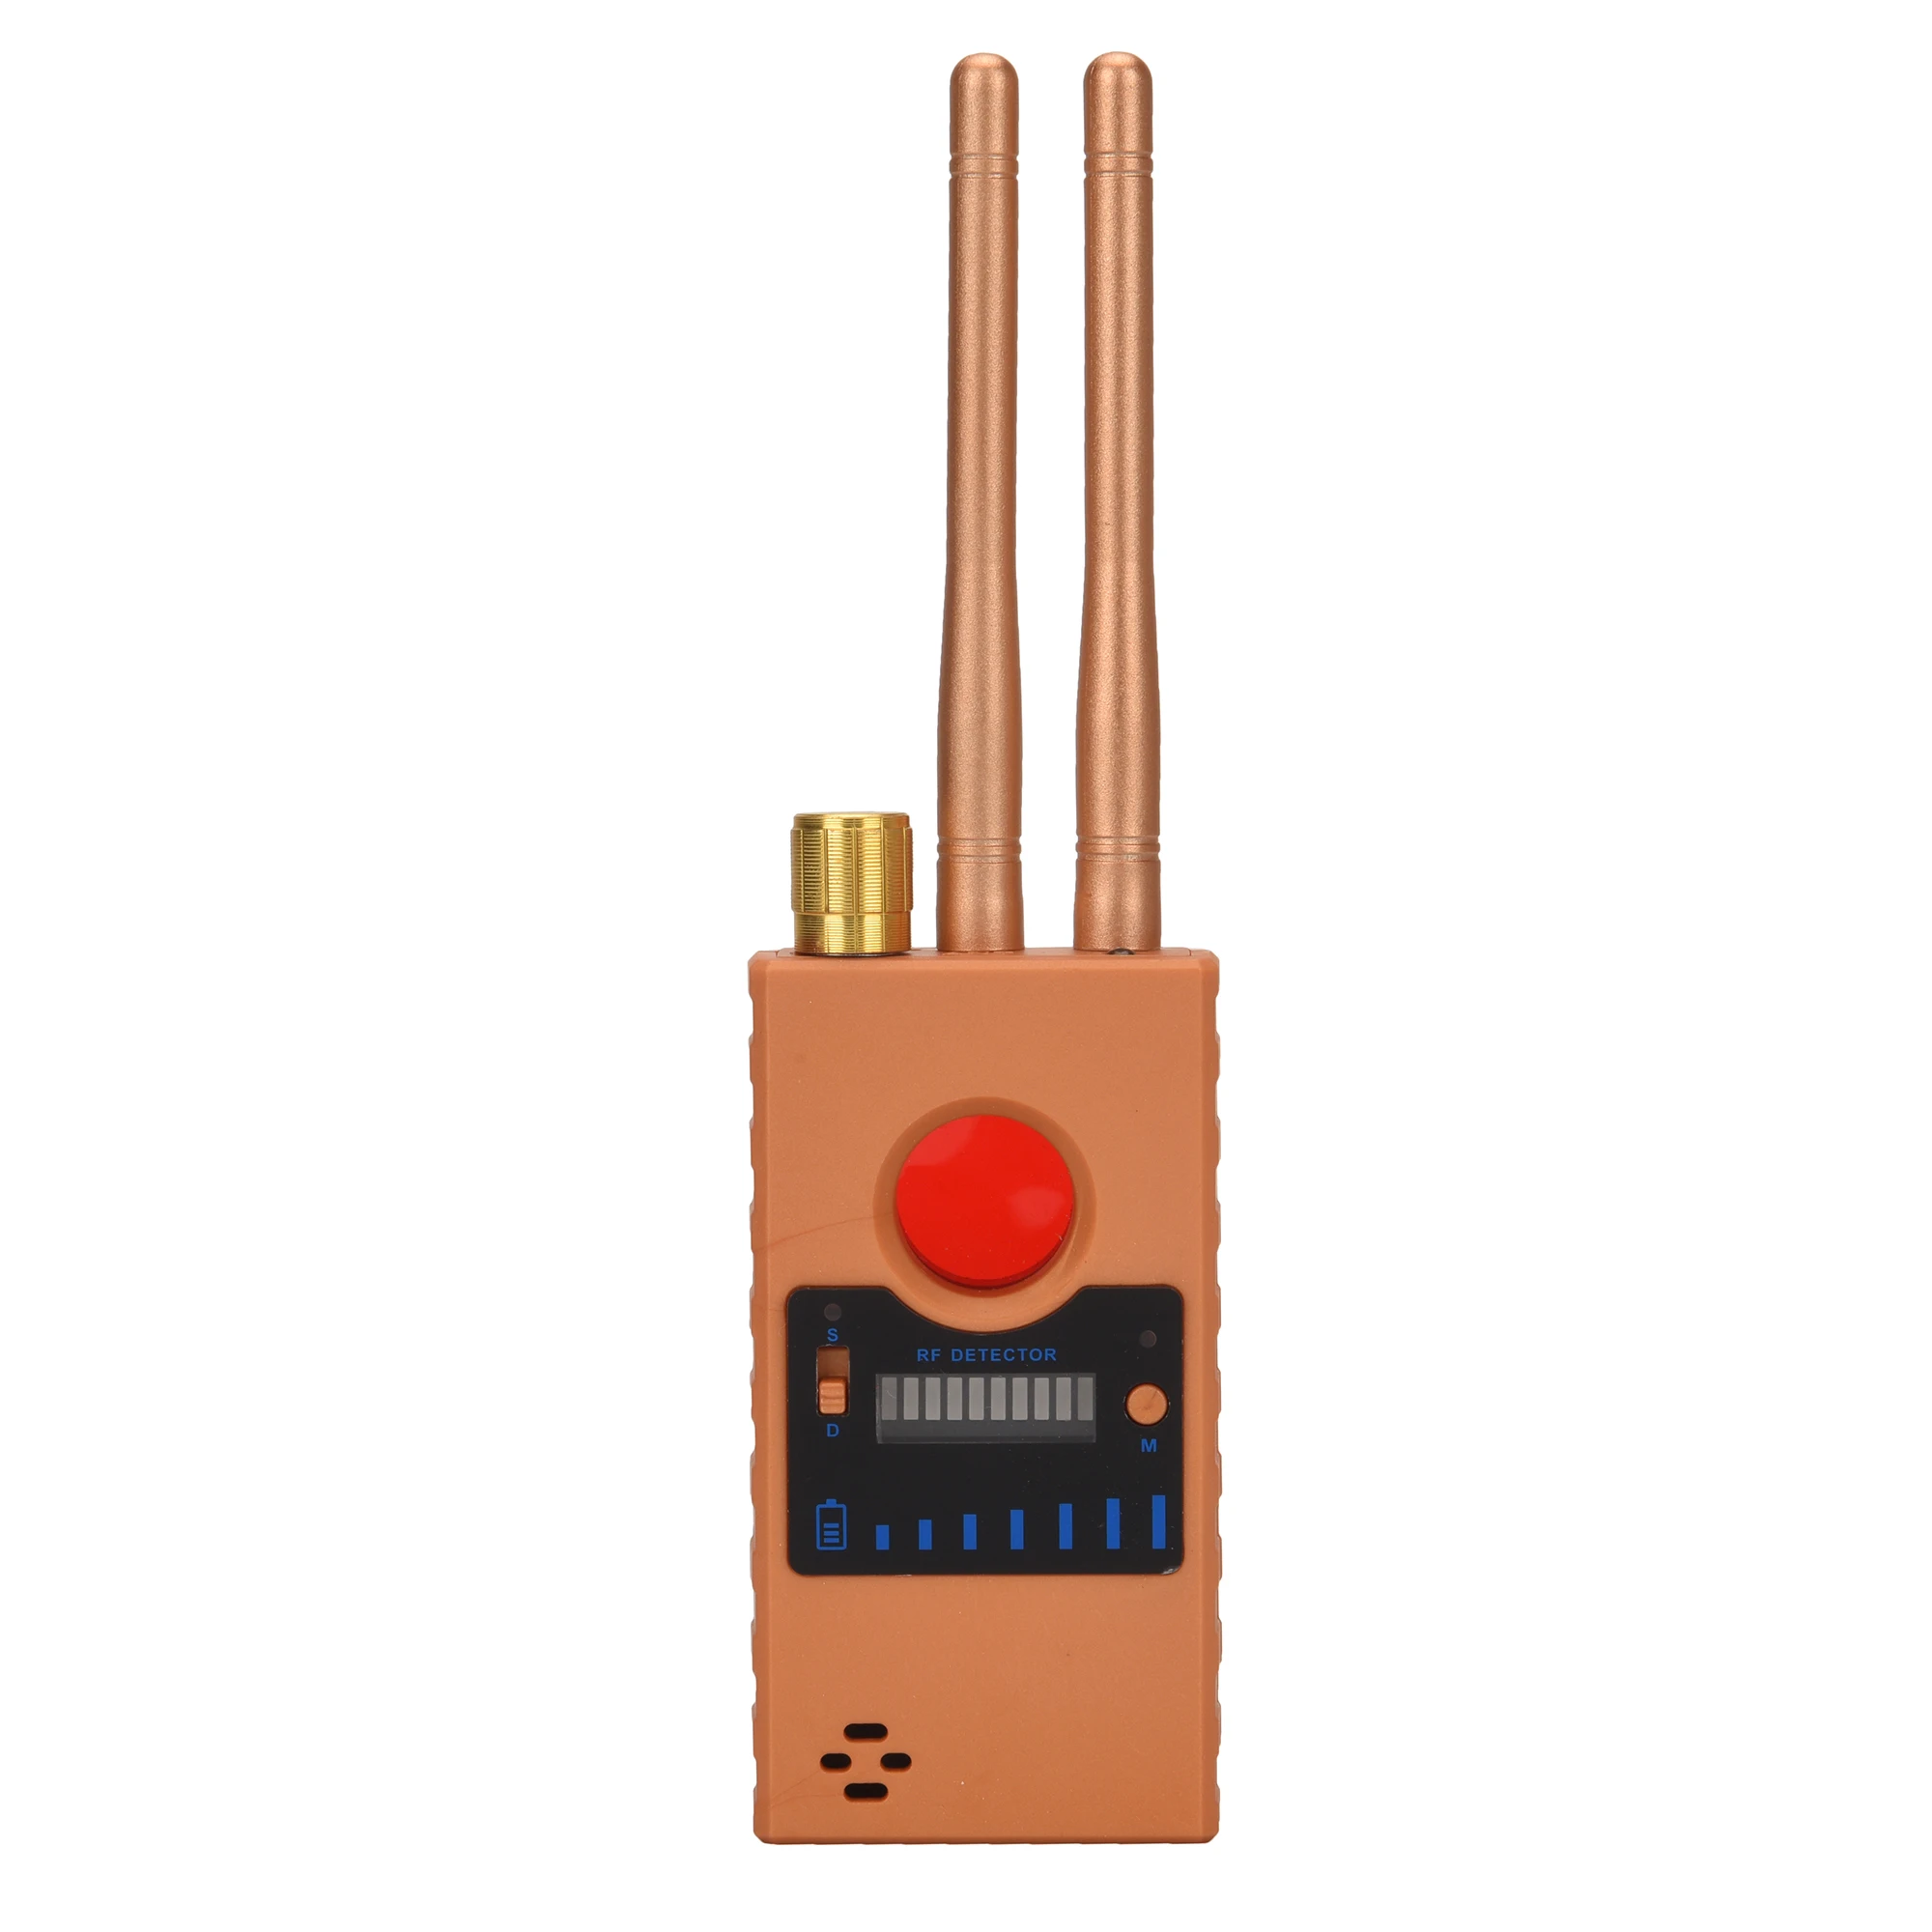 Wi-Fi Pinhole Скрытая камера детектор двойная антенна G529 RF сигнал секретный gps аудио GSM Мобильный микро Cam анти-скрытый шпион ошибка искатель